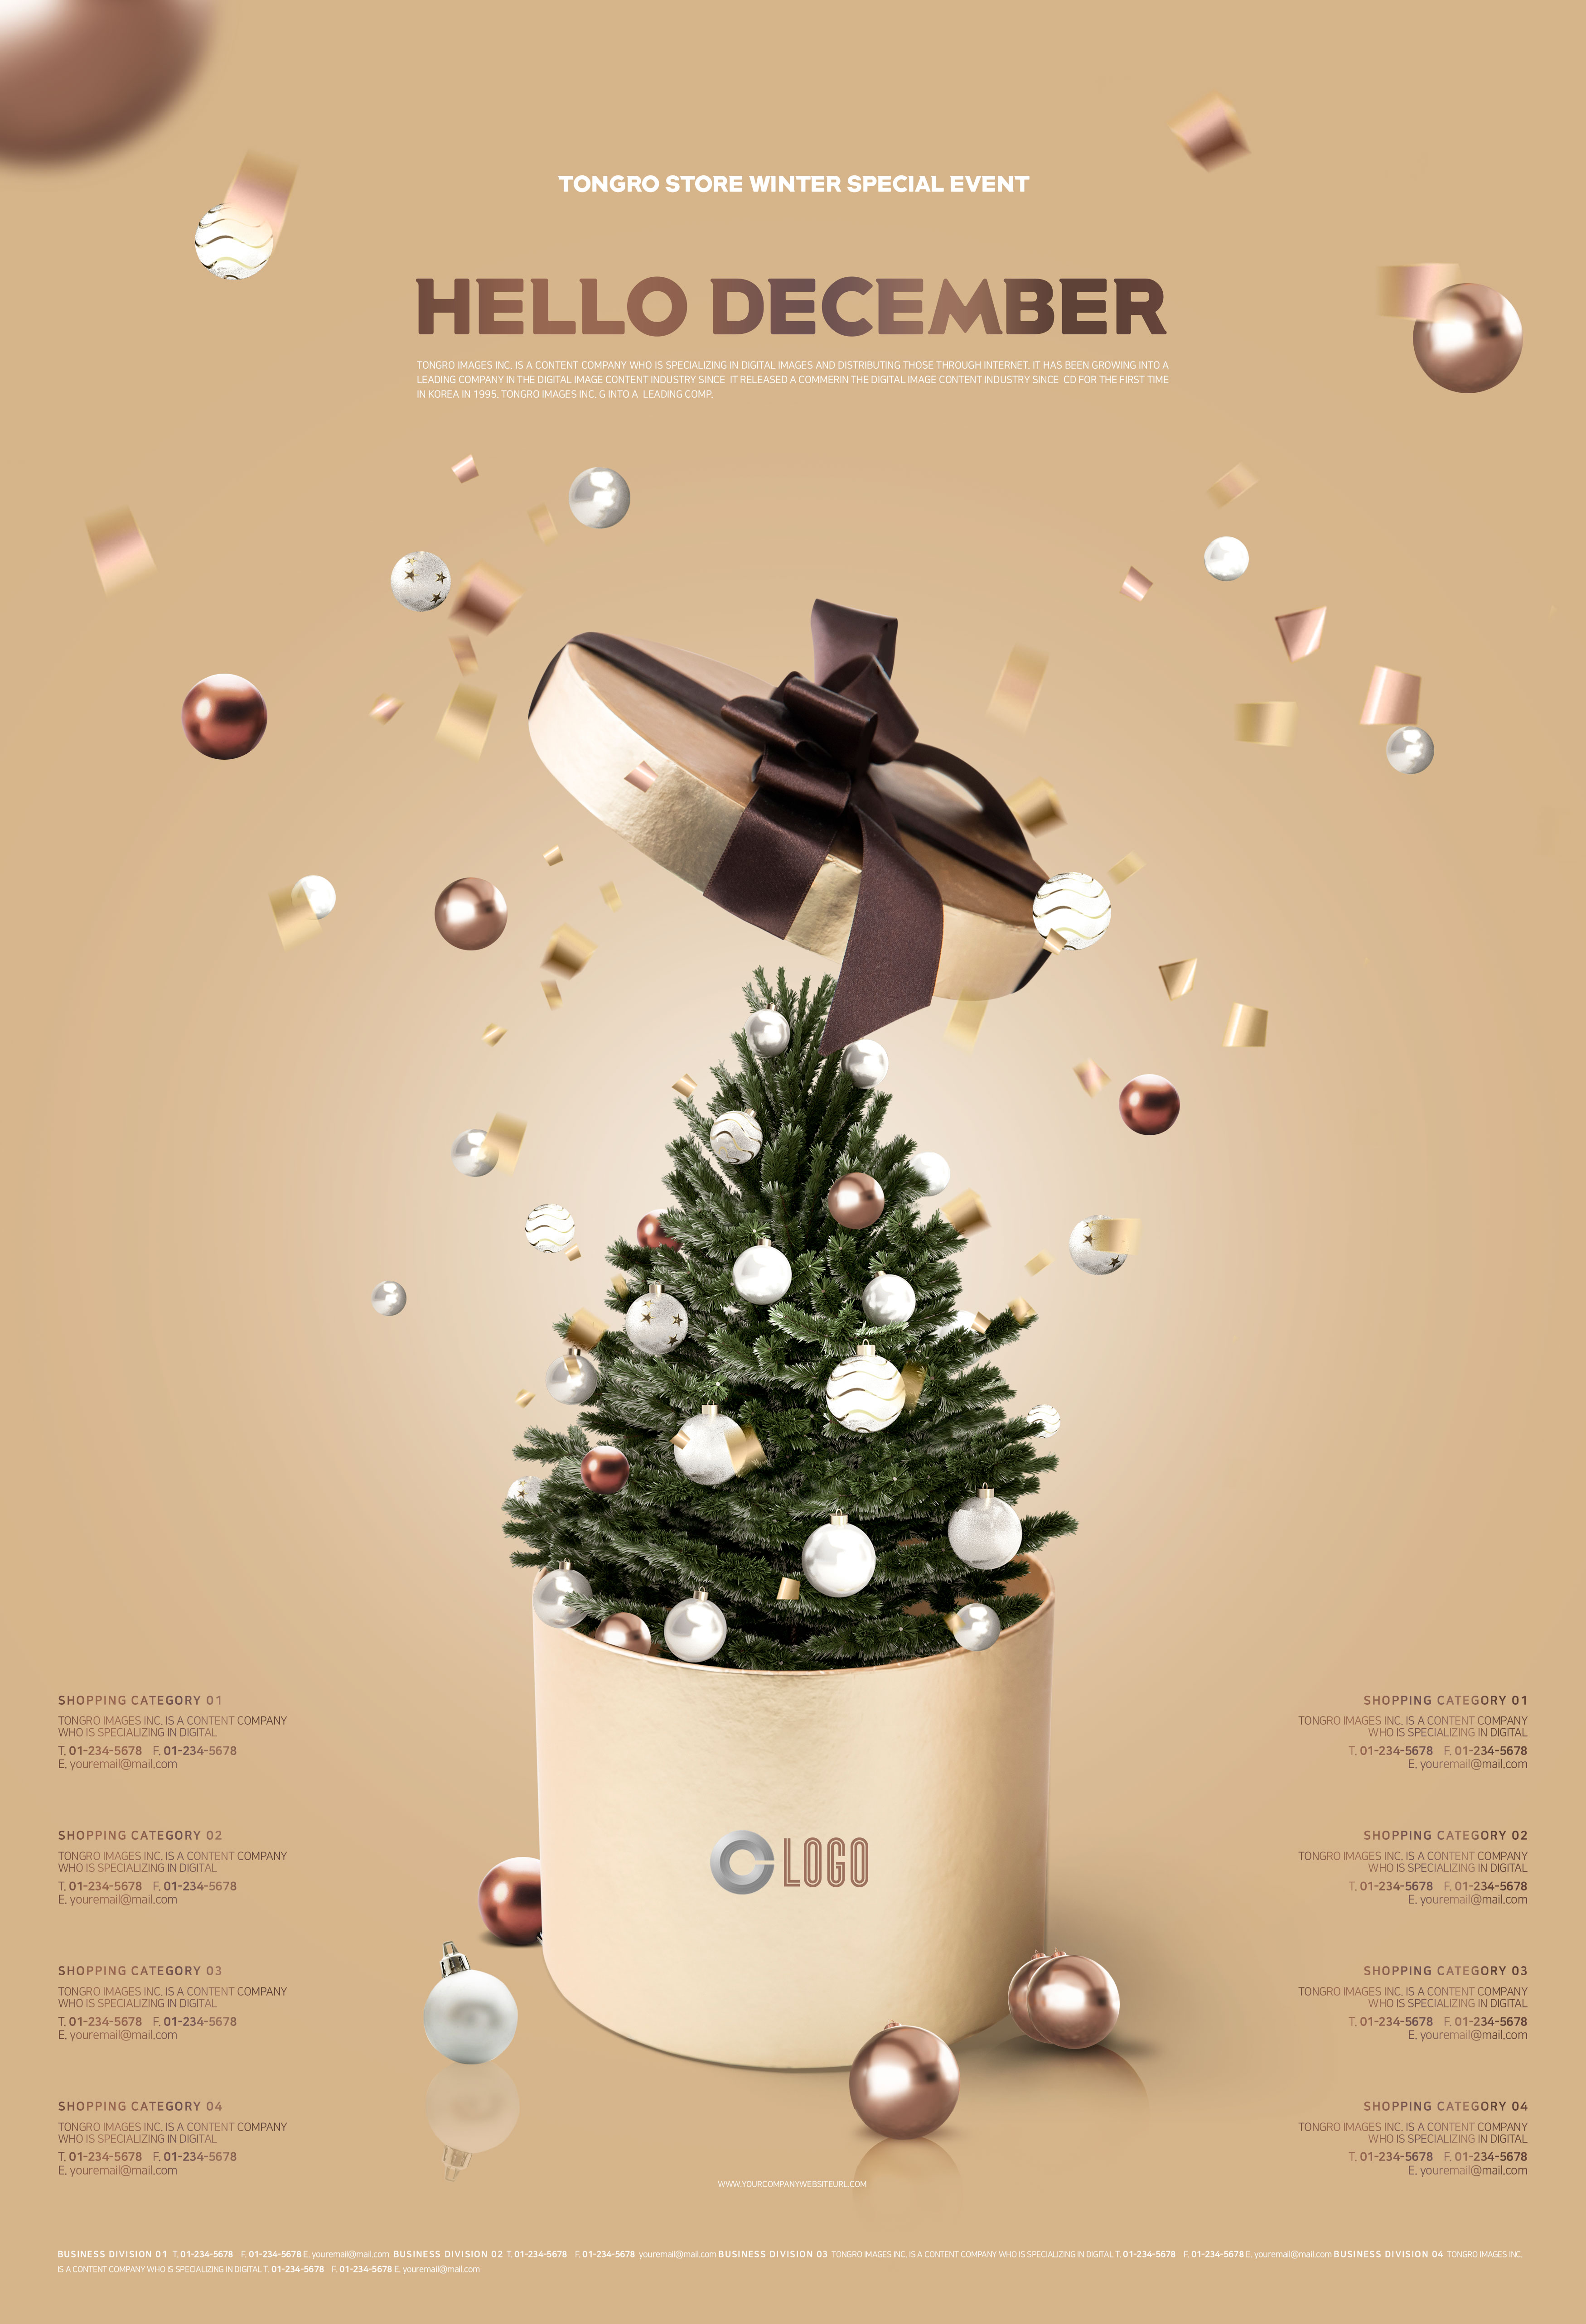 十二月圣诞节日礼品促销海报模板psd素材插图